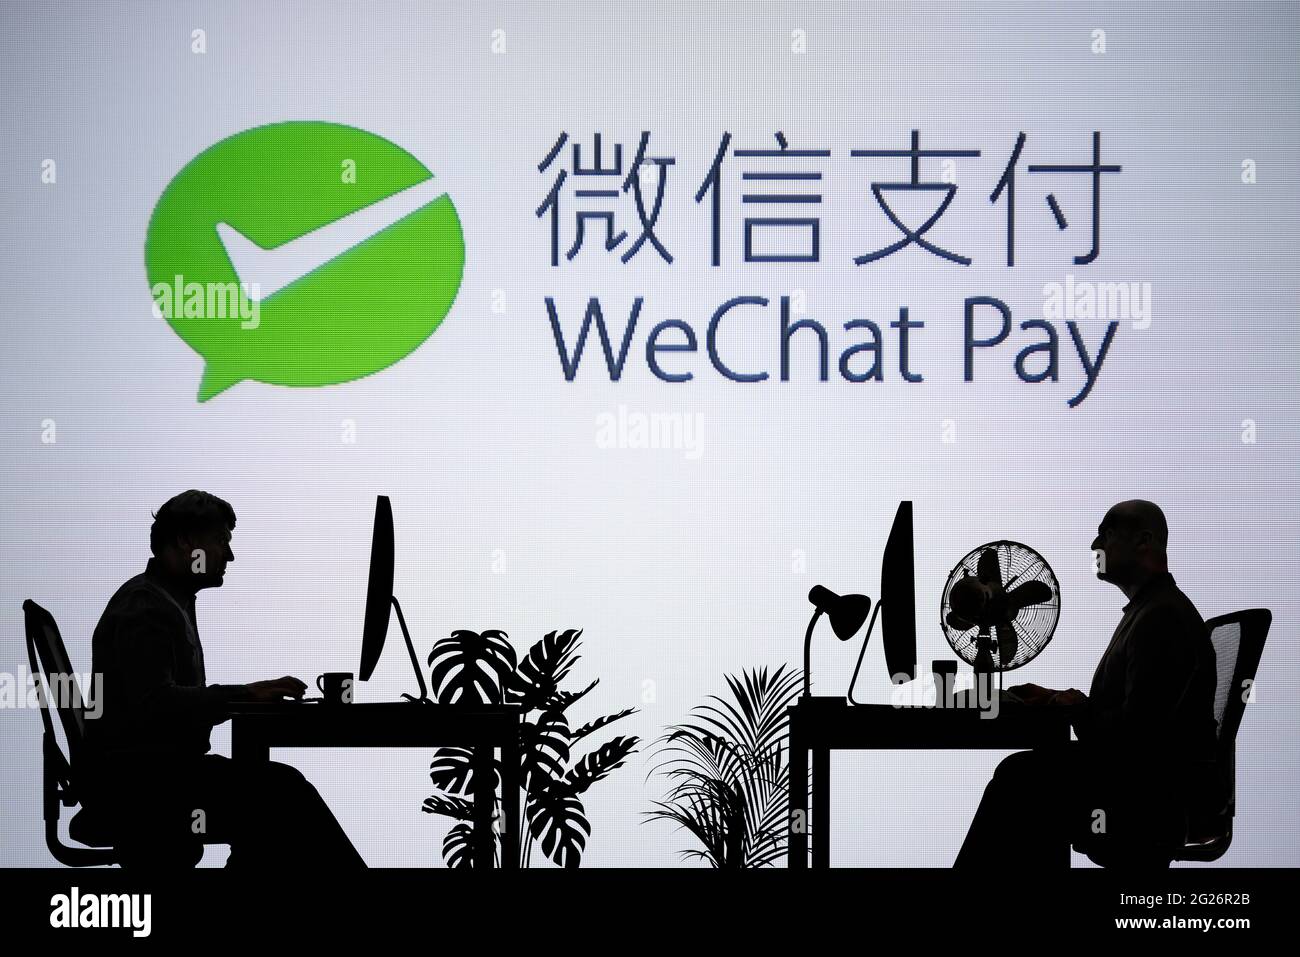 Le logo WeChat Pay est visible sur un écran LED en arrière-plan tandis que deux personnes silhouetées travaillent dans un environnement de bureau (usage éditorial uniquement) Banque D'Images